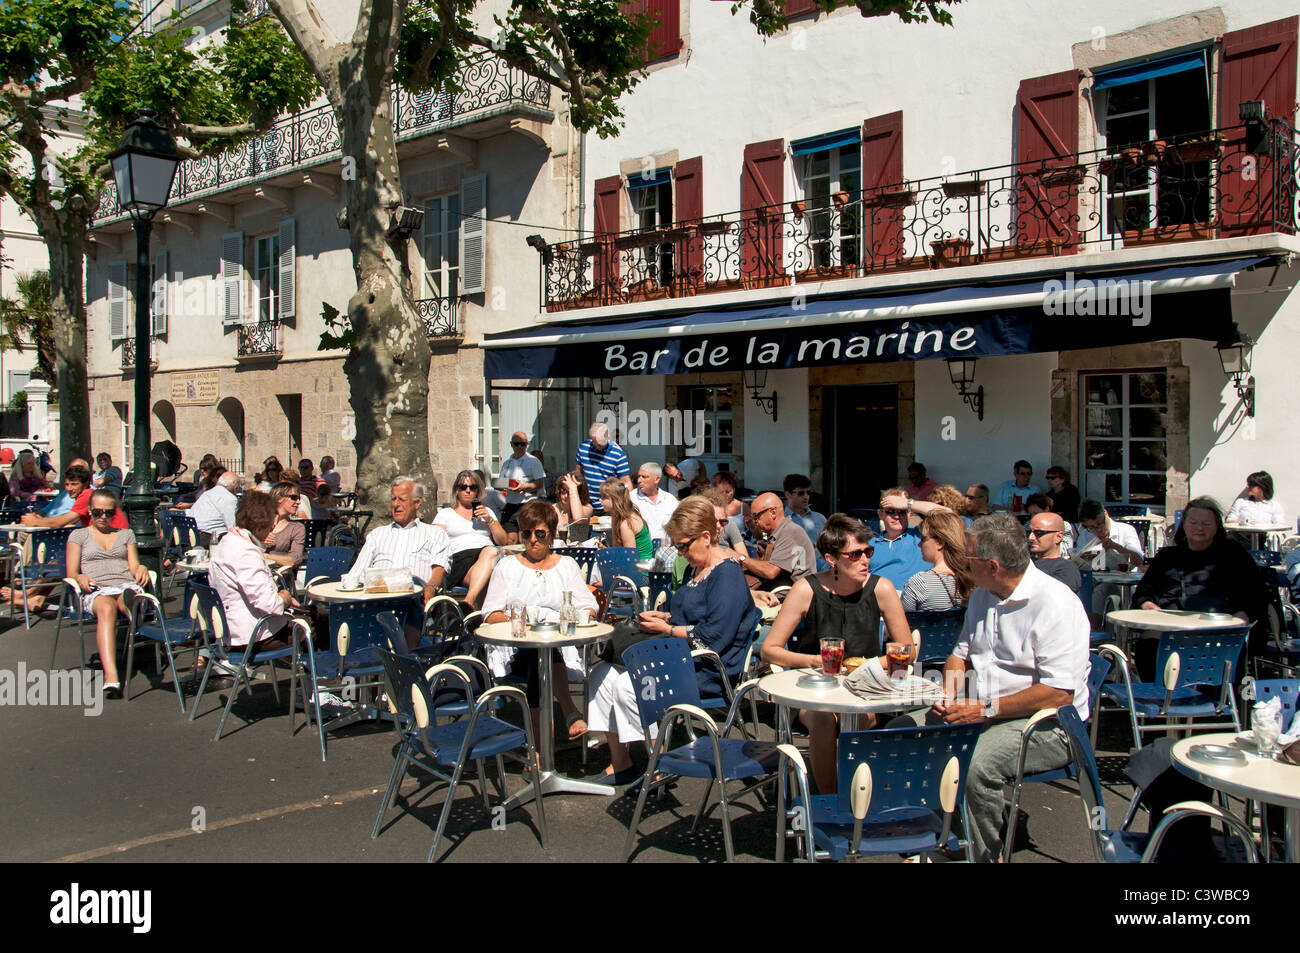 Place Loui XIV France St Jean de Luz Restaurant Bar Pub Pavement a typical fishing village Stock Photo